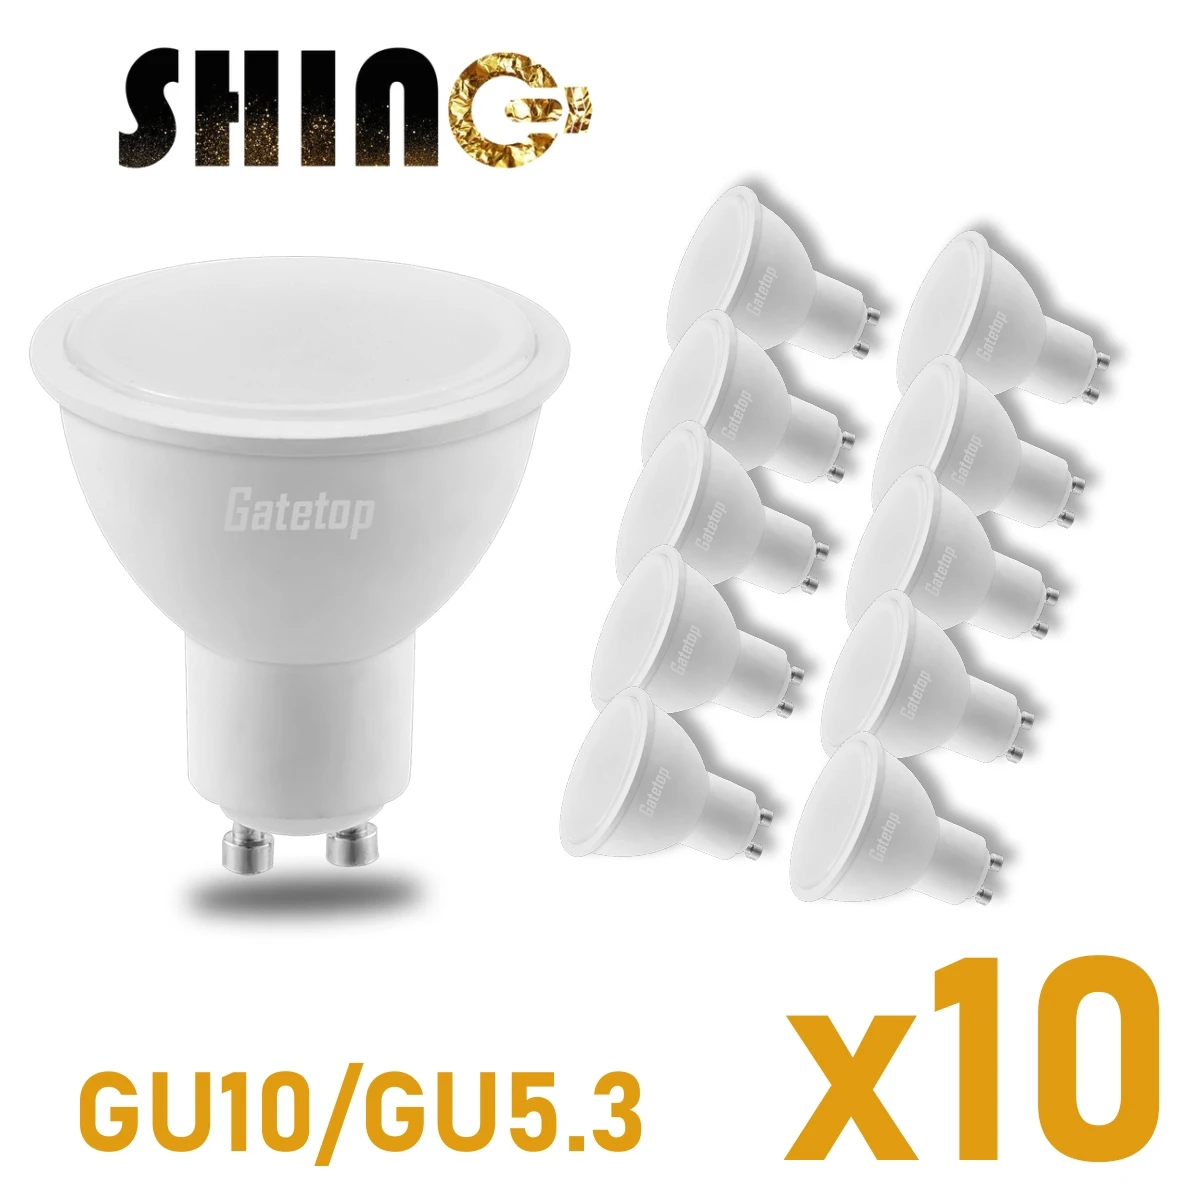 Светодиодный энергосберегающий прожектор GU10 GU5.3 AC100-240V 220V 110V без стробоскопа теплый белый свет 3 Вт-8 Вт может заменить 30 Вт 50 Вт галогенную лампу - 0